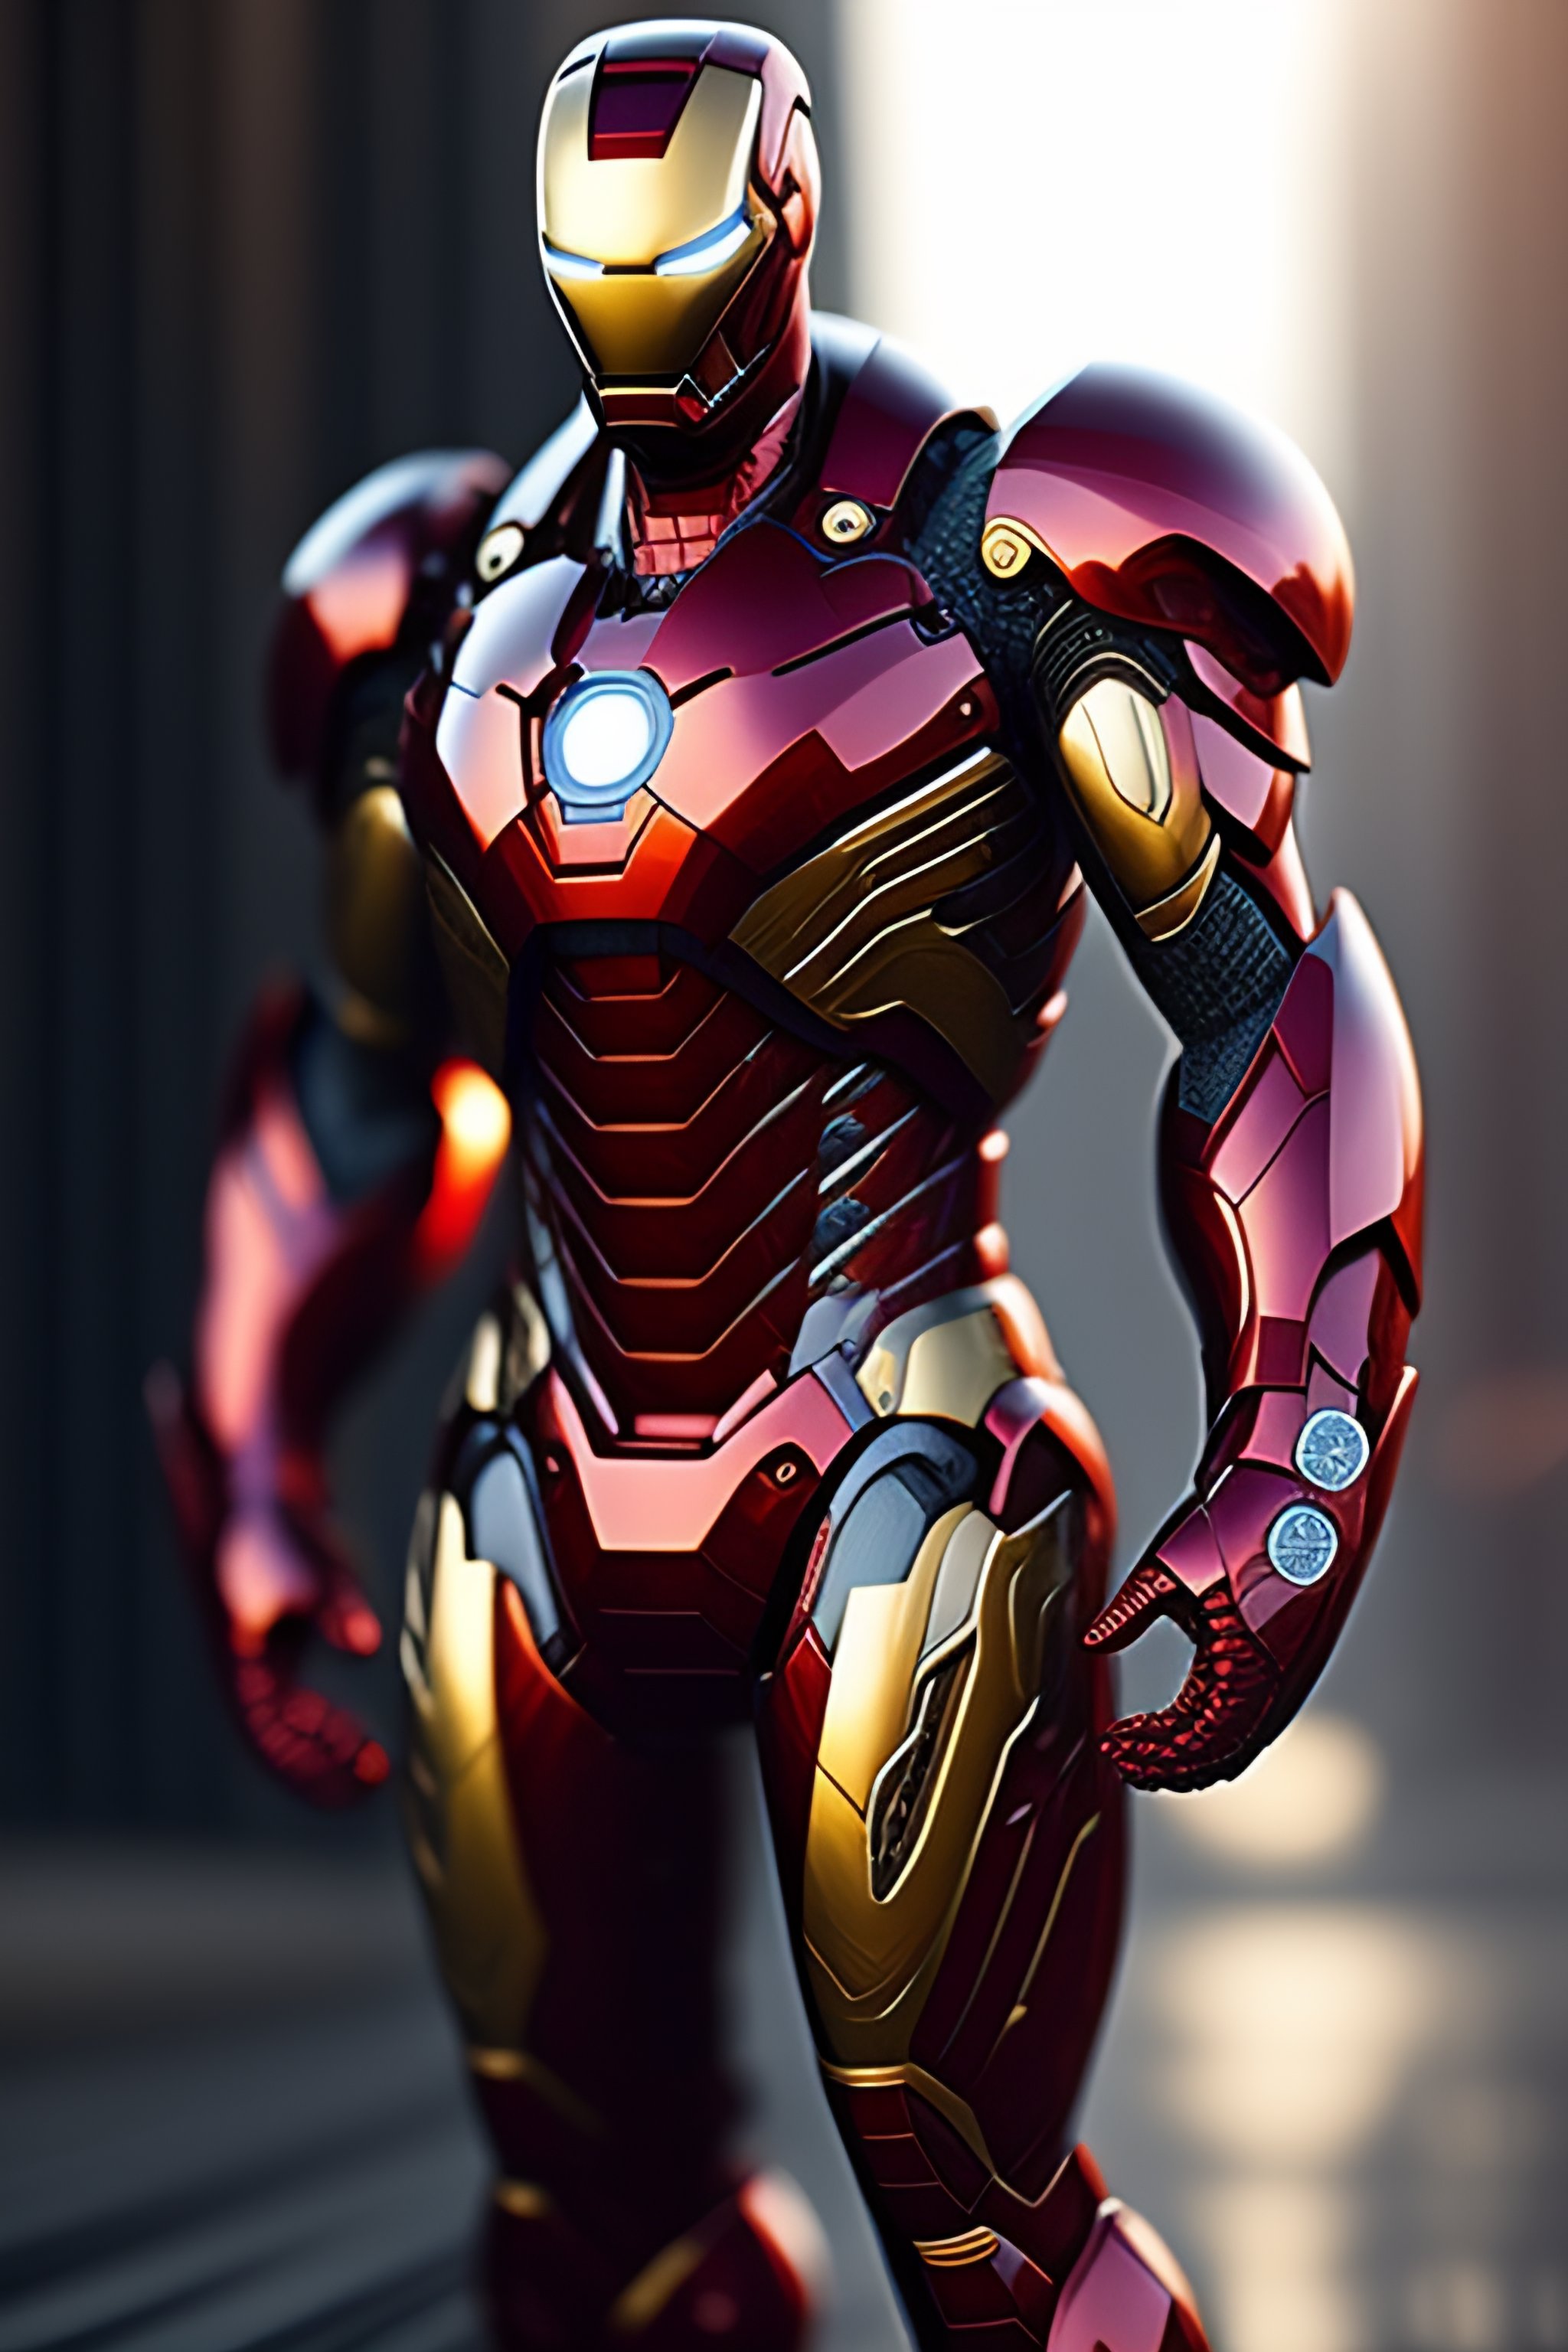 Hình nền Iron Man trong bộ giáp đầy màu sắc